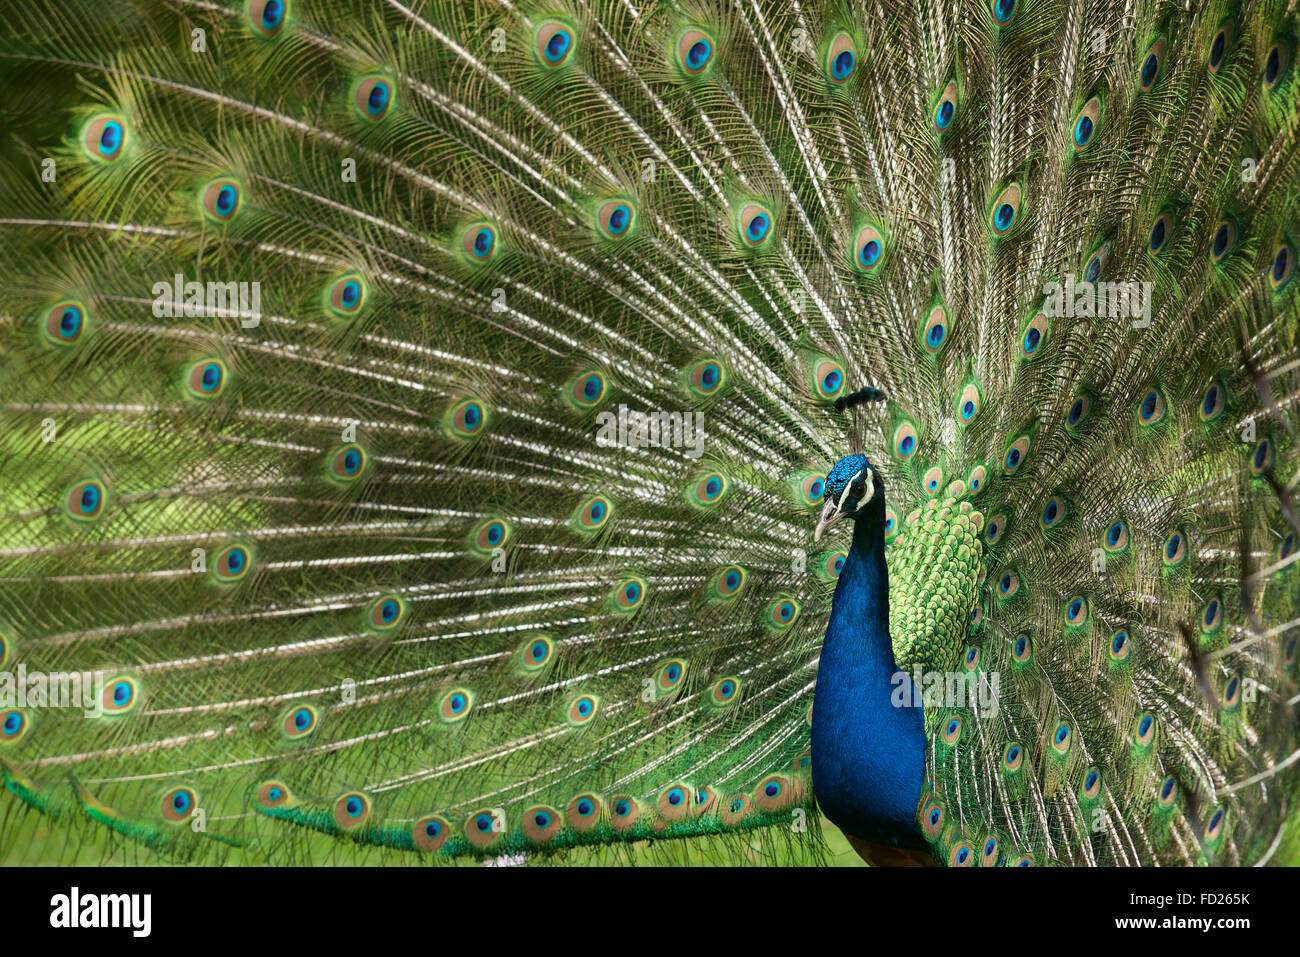 L'Europe, l'Allemagne, Peacock, paons commun (lat. Pavo cristatus) affichage de la queue, à l'Forstbotanischer Garten, un arboretum et Banque D'Images